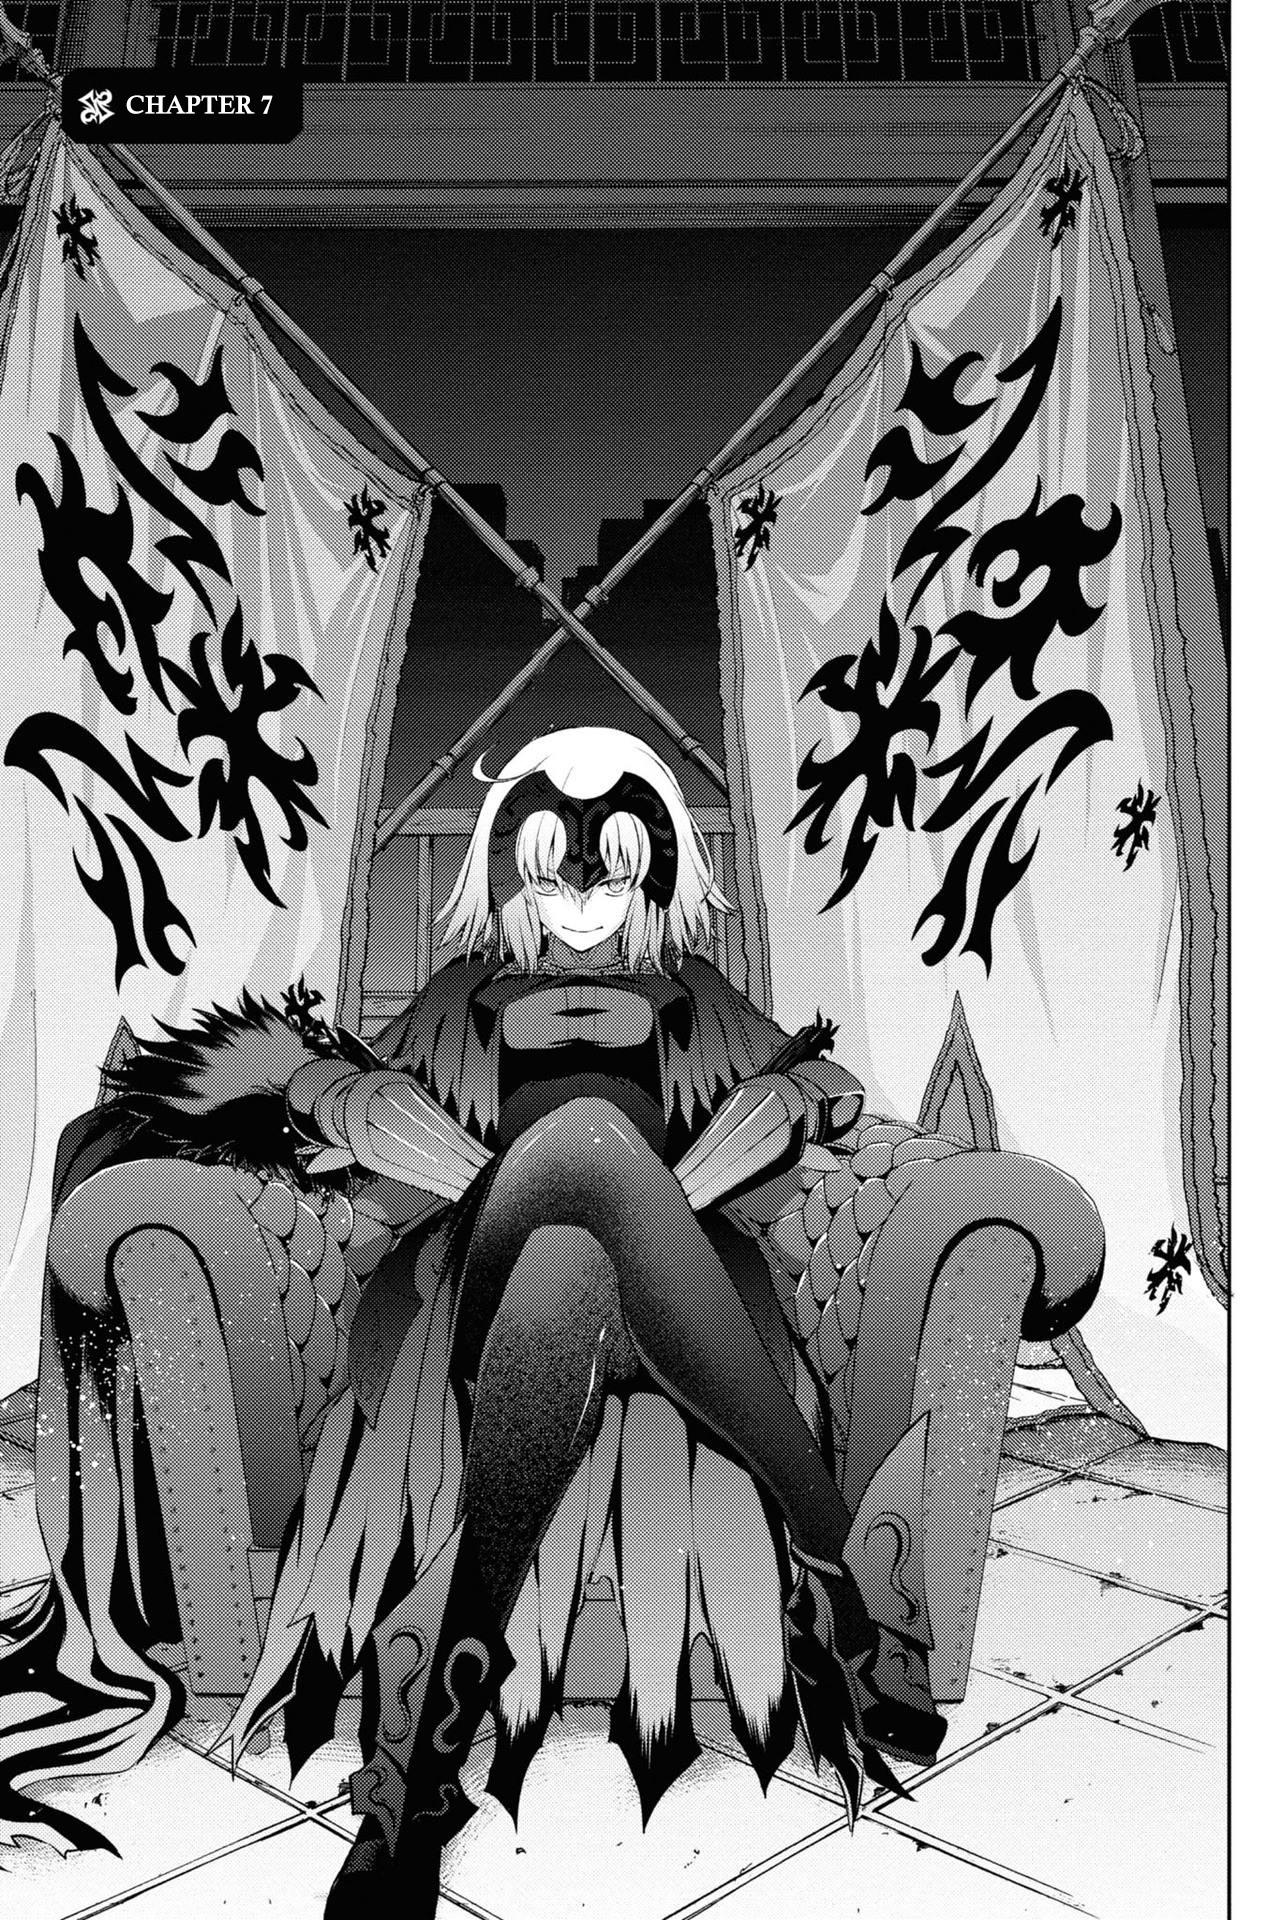 Fate/grand Order: Epic Of Remnant - Pseudo-Singularity I: Quarantined  Territory Of Malice, Shinjuku - Shinjuku Phantom Incident Manga Online Free  - Manganelo